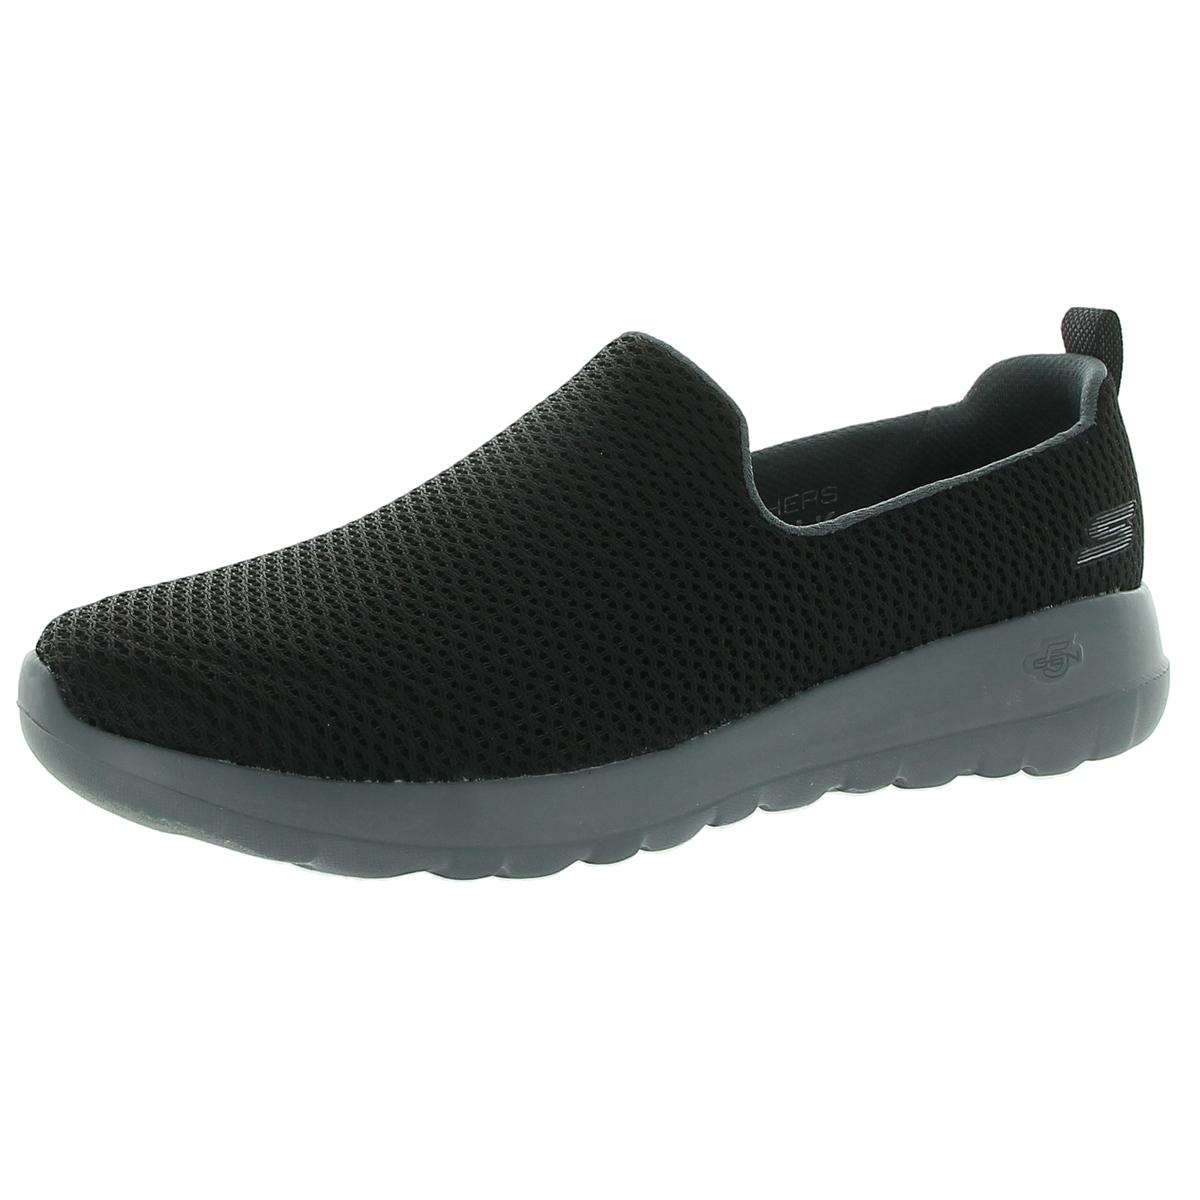 Skechers Women's Gowalk Joy Shoe, Black/Charcoal, 7.5 M US - Walmart.com